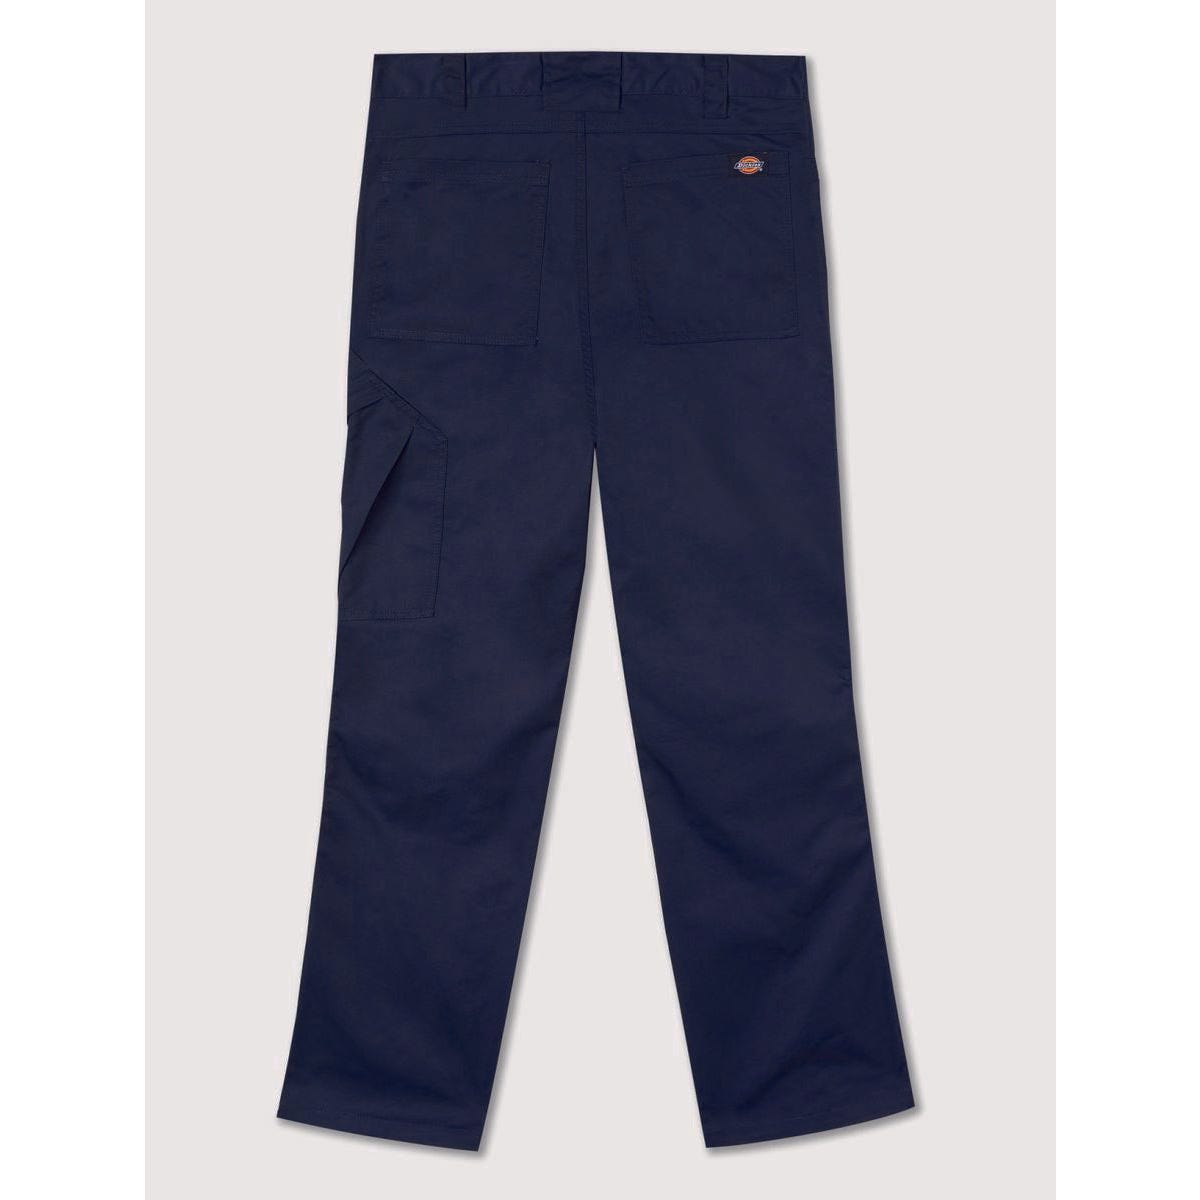 Pantalon de travail Action Flex gris - Dickies - Taille 48 6